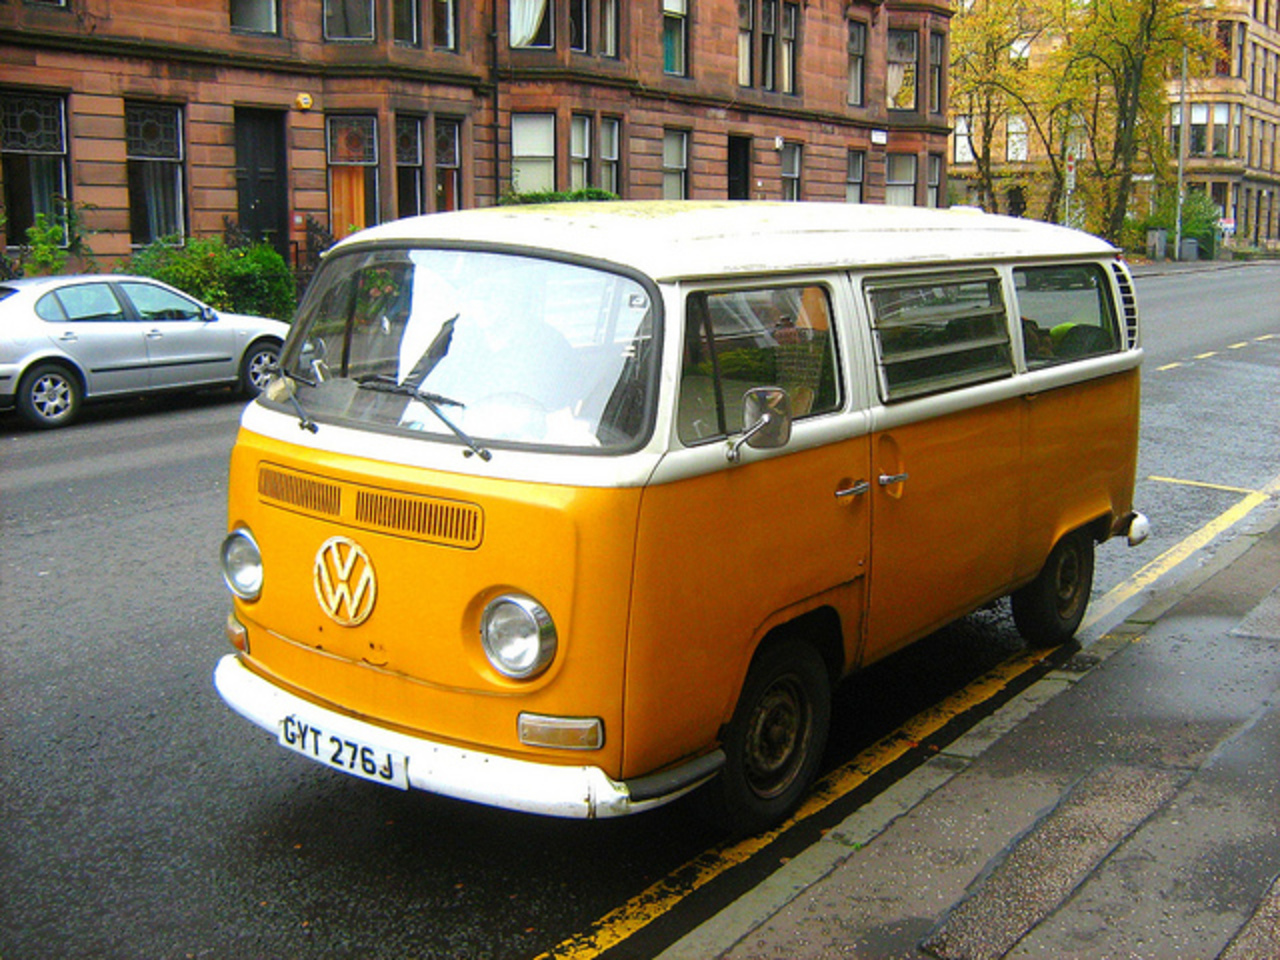 Volkswagen Camper Van, Kombi (Motor-Home) Type 1 - 2 of 3 | Flickr ...